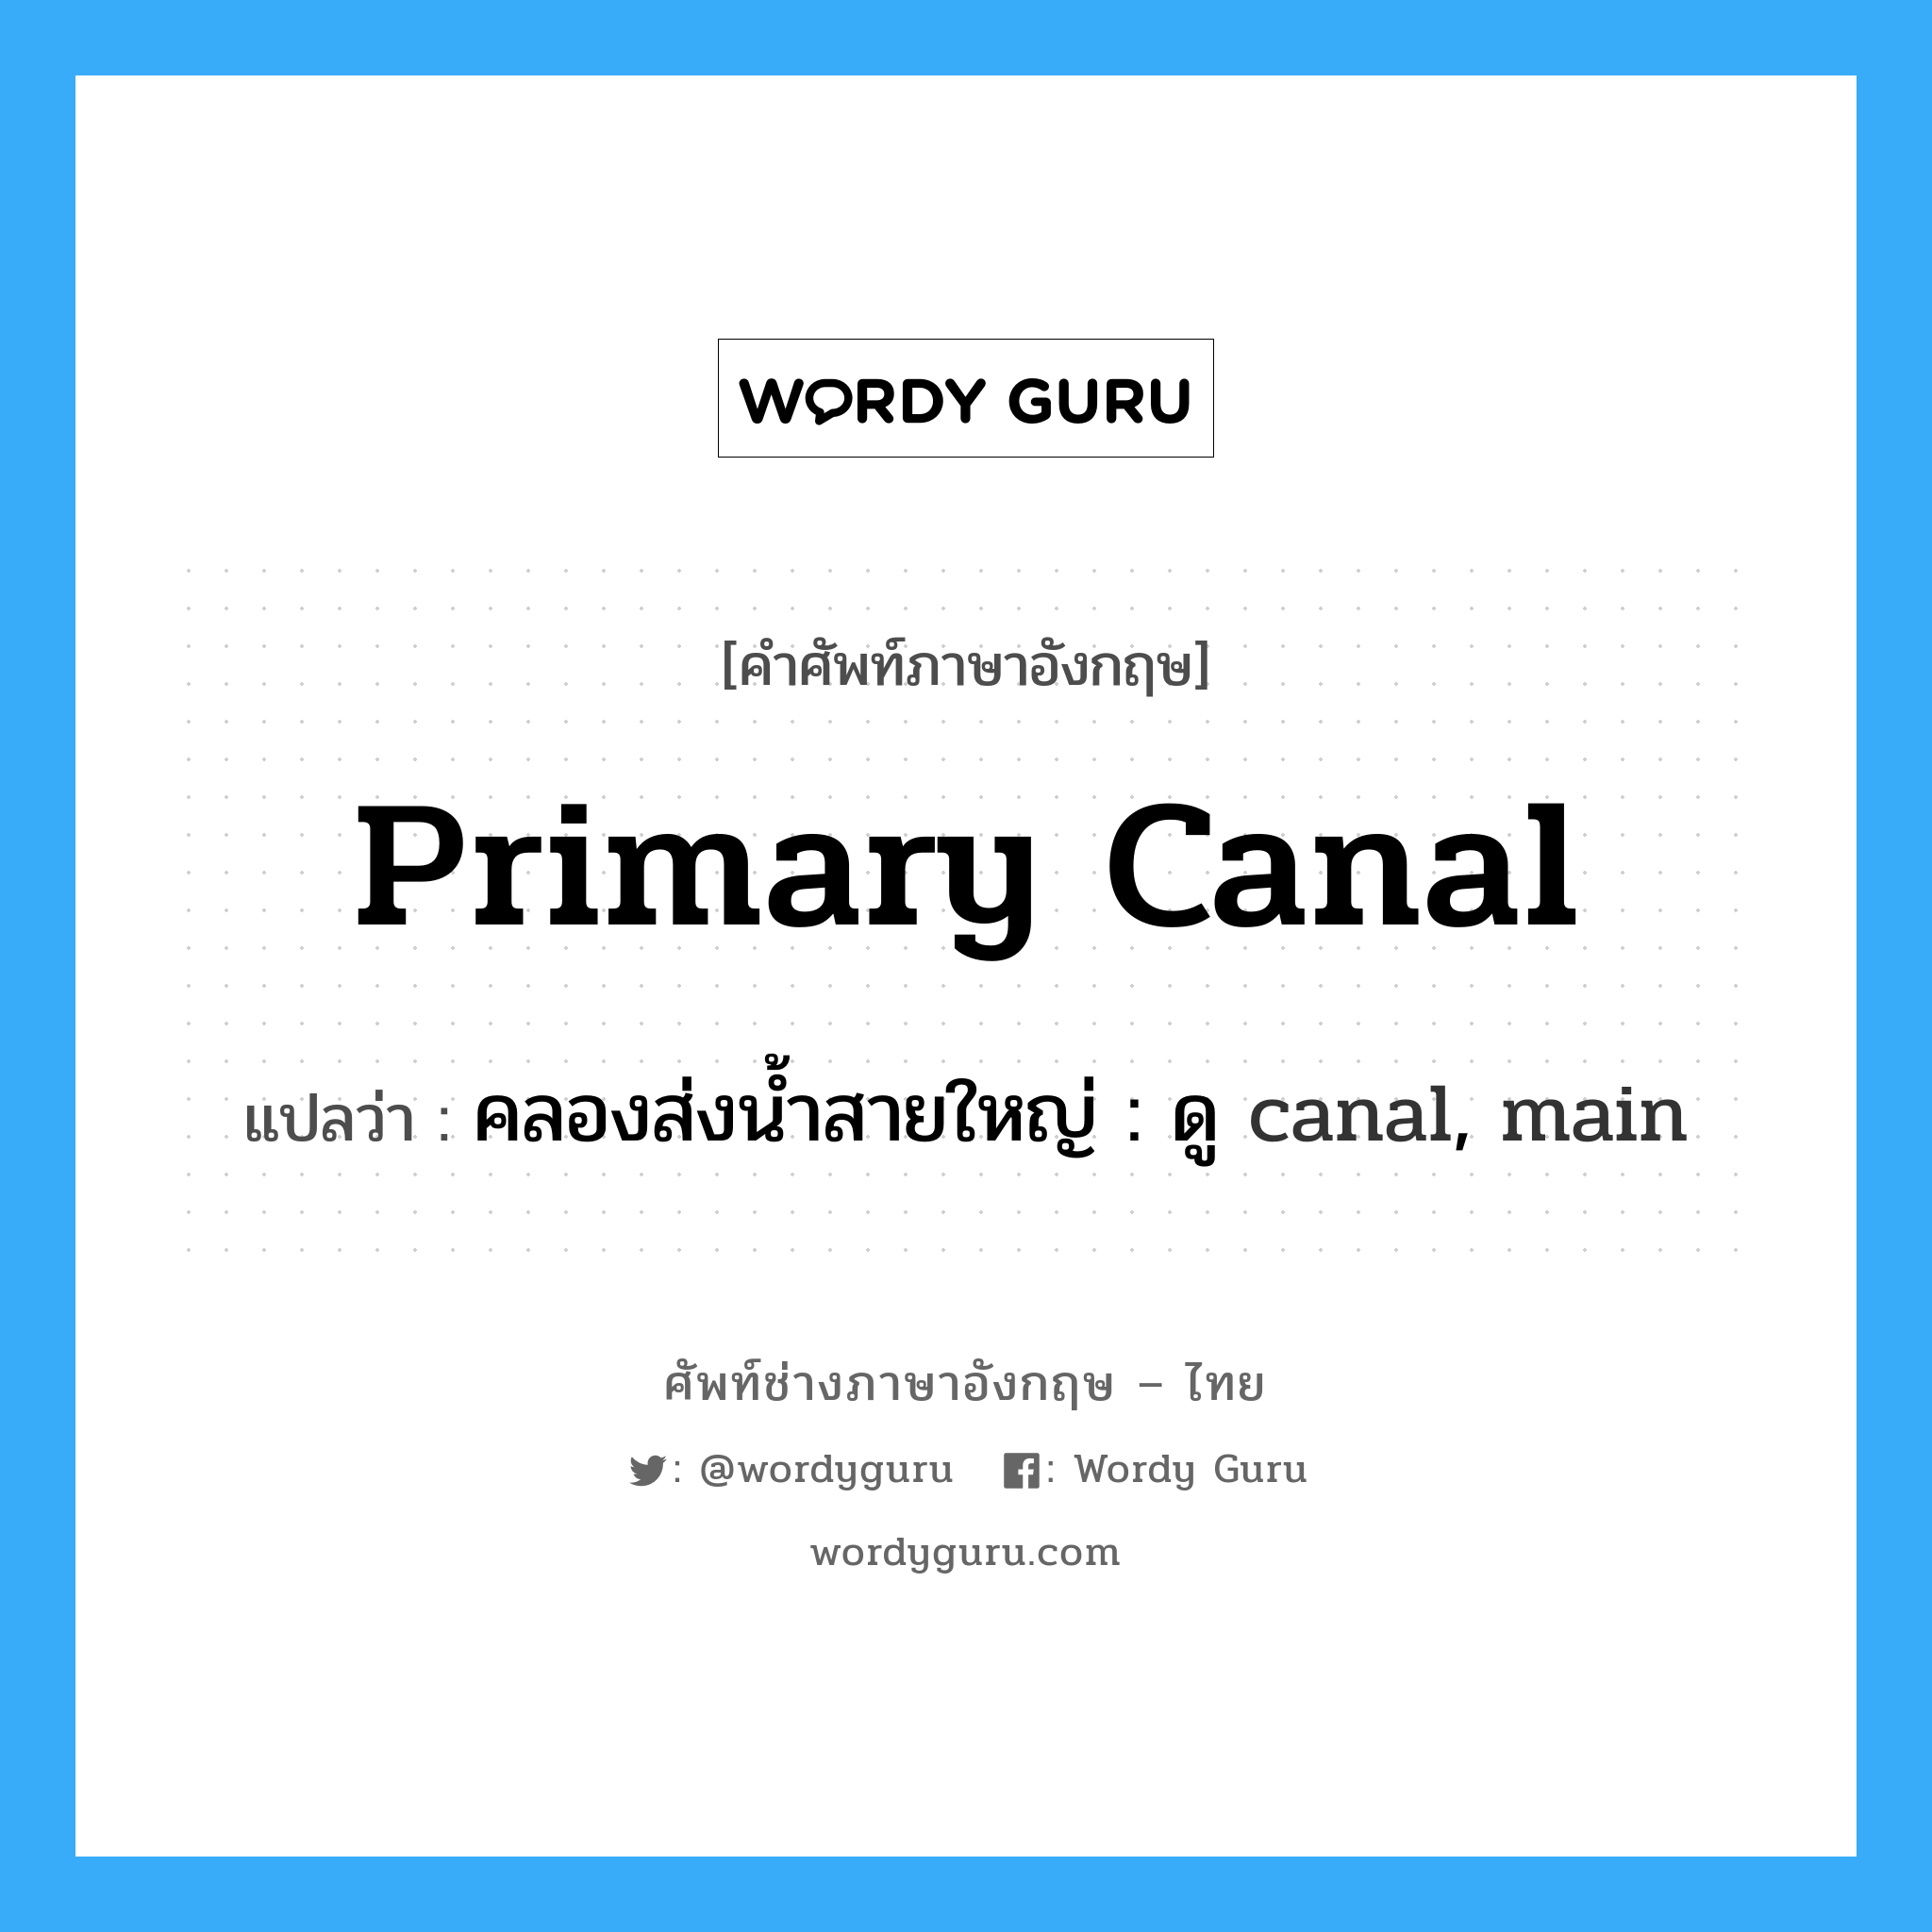 คลองส่งน้ำสายใหญ่ : ดู canal, main ภาษาอังกฤษ?, คำศัพท์ช่างภาษาอังกฤษ - ไทย คลองส่งน้ำสายใหญ่ : ดู canal, main คำศัพท์ภาษาอังกฤษ คลองส่งน้ำสายใหญ่ : ดู canal, main แปลว่า primary canal